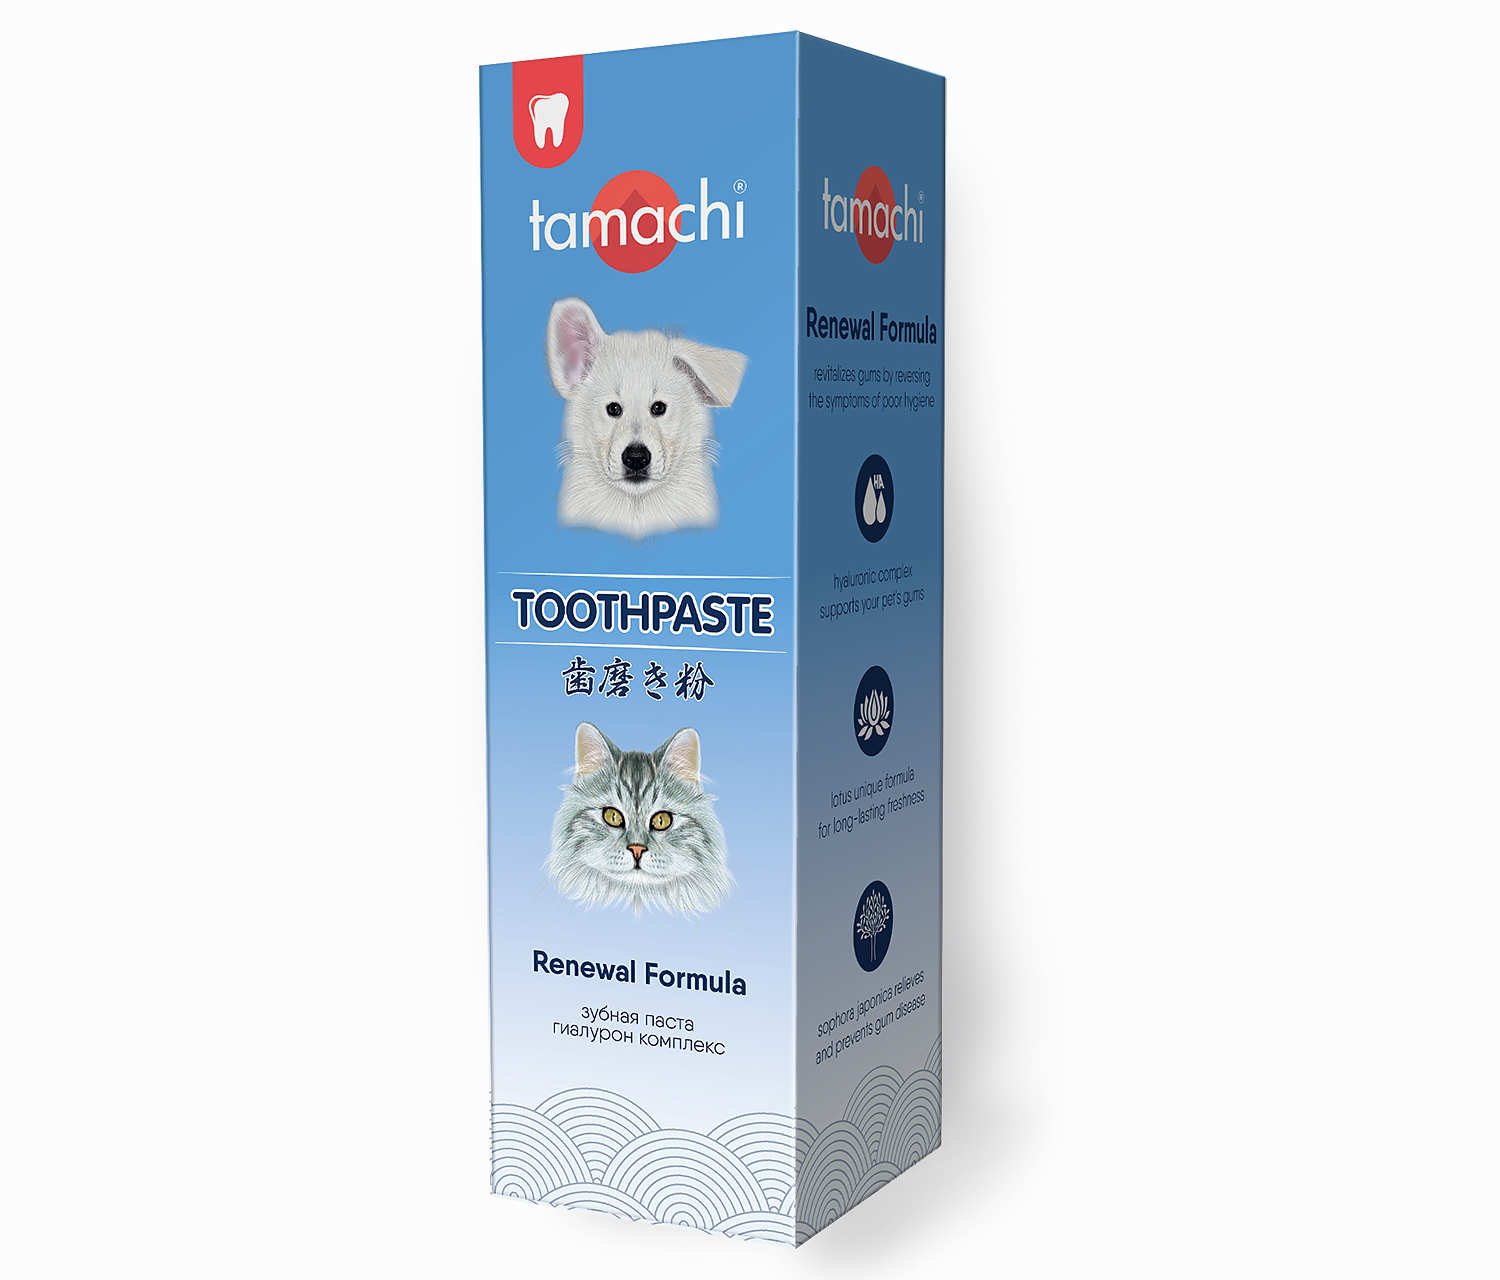 Tamachi Зубная паста, 100 мл шт